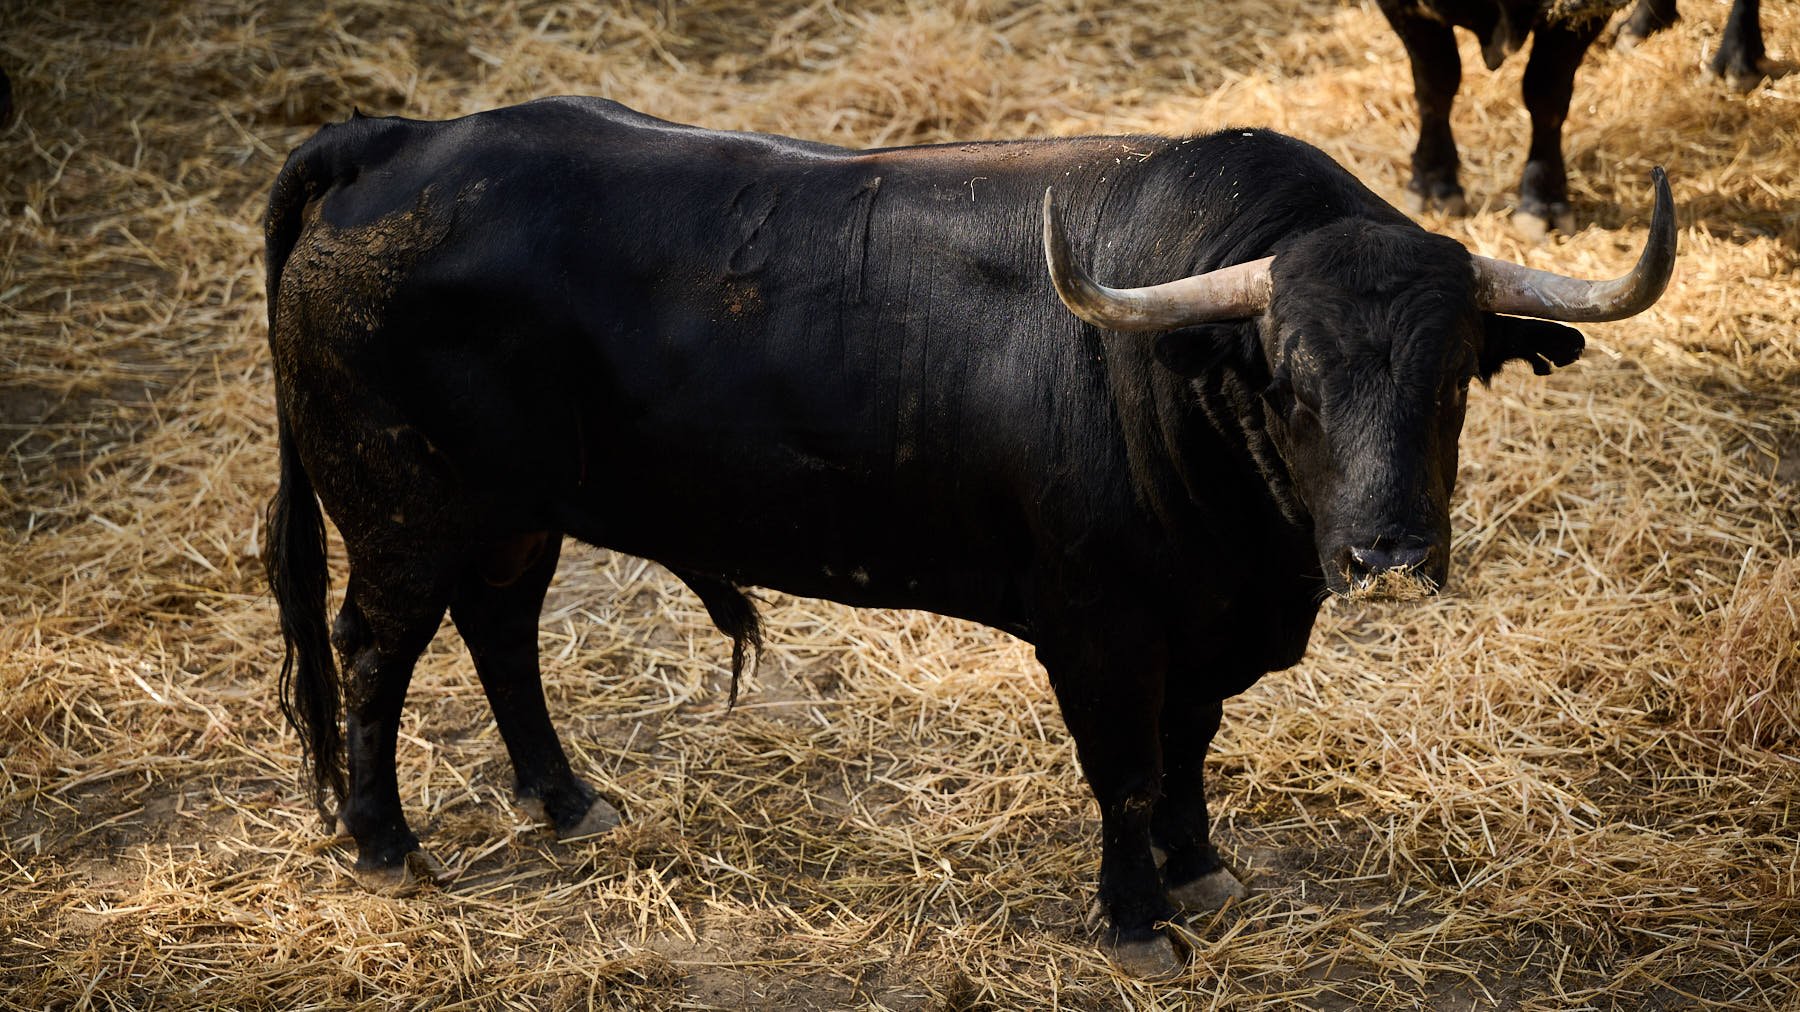 El toro 'Navegante' (nº 21) de la ganadería de Victoriano del Río (13 de julio) y de 570 kilos de peso en los corrales del Gas de Pamplona. PABLO LASAOSA

